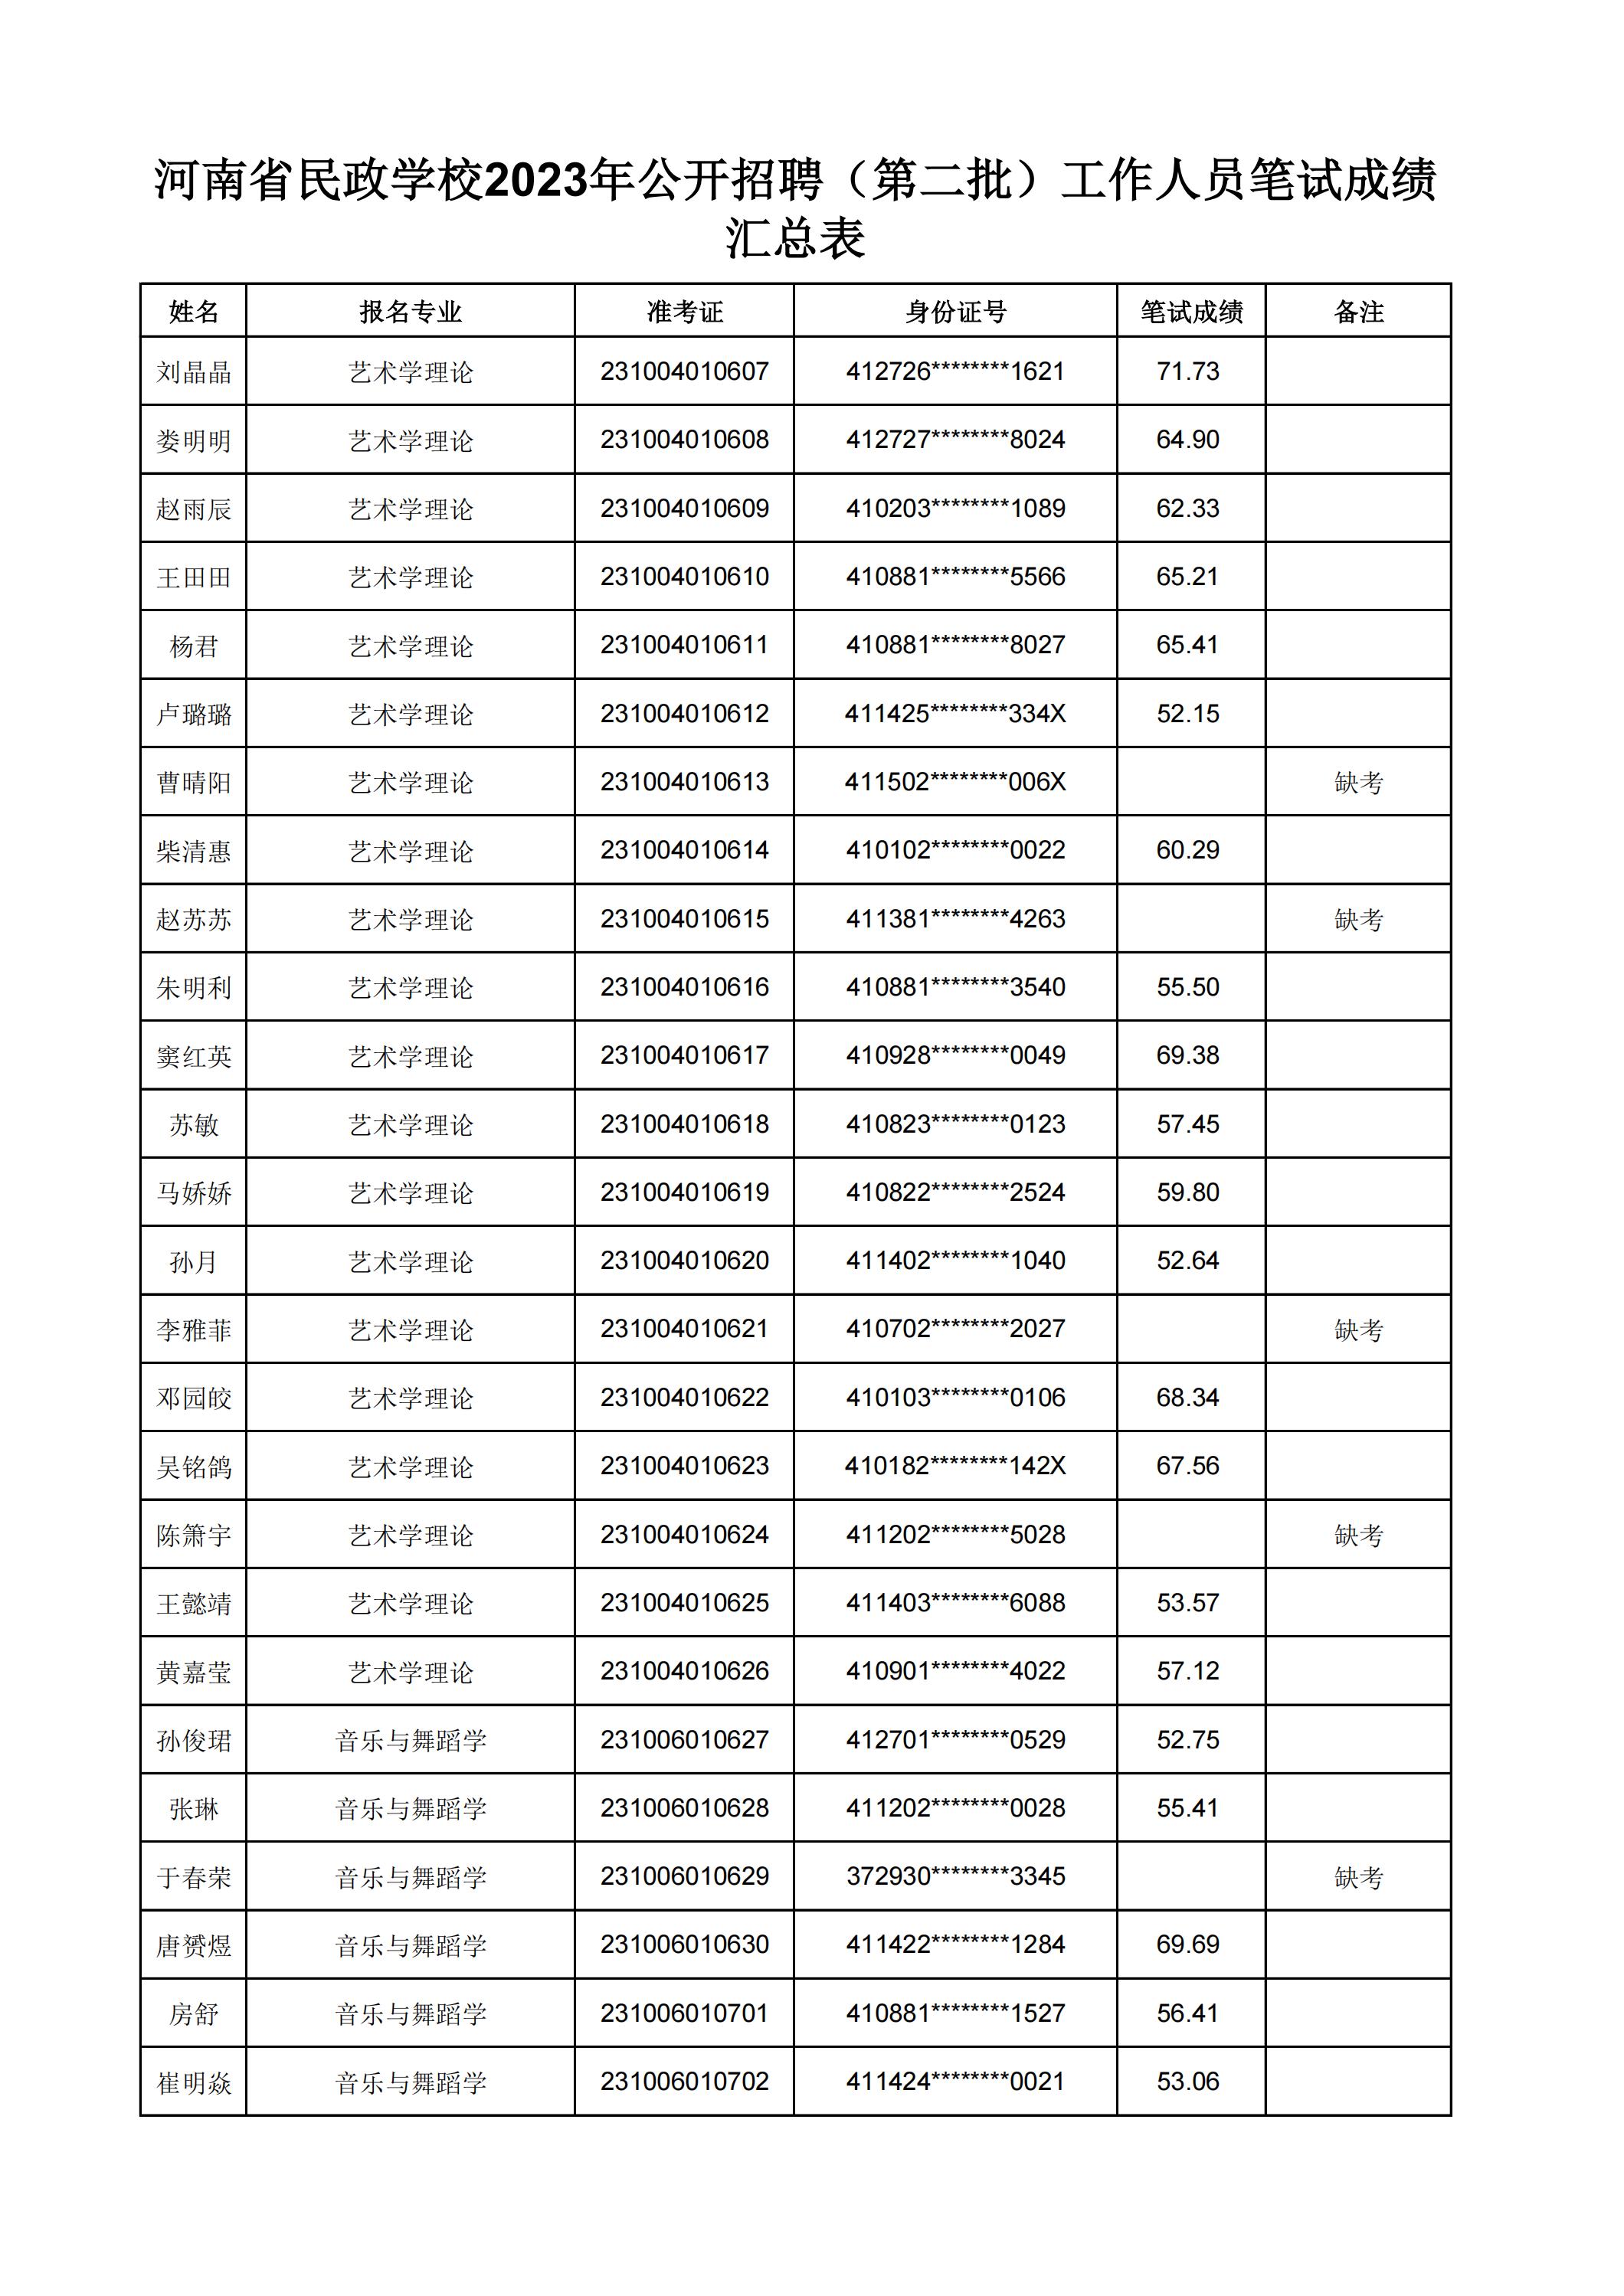 河南省民政学校2023年公开招聘（第二批）工作人员笔试成绩汇总表(2)_06.jpg